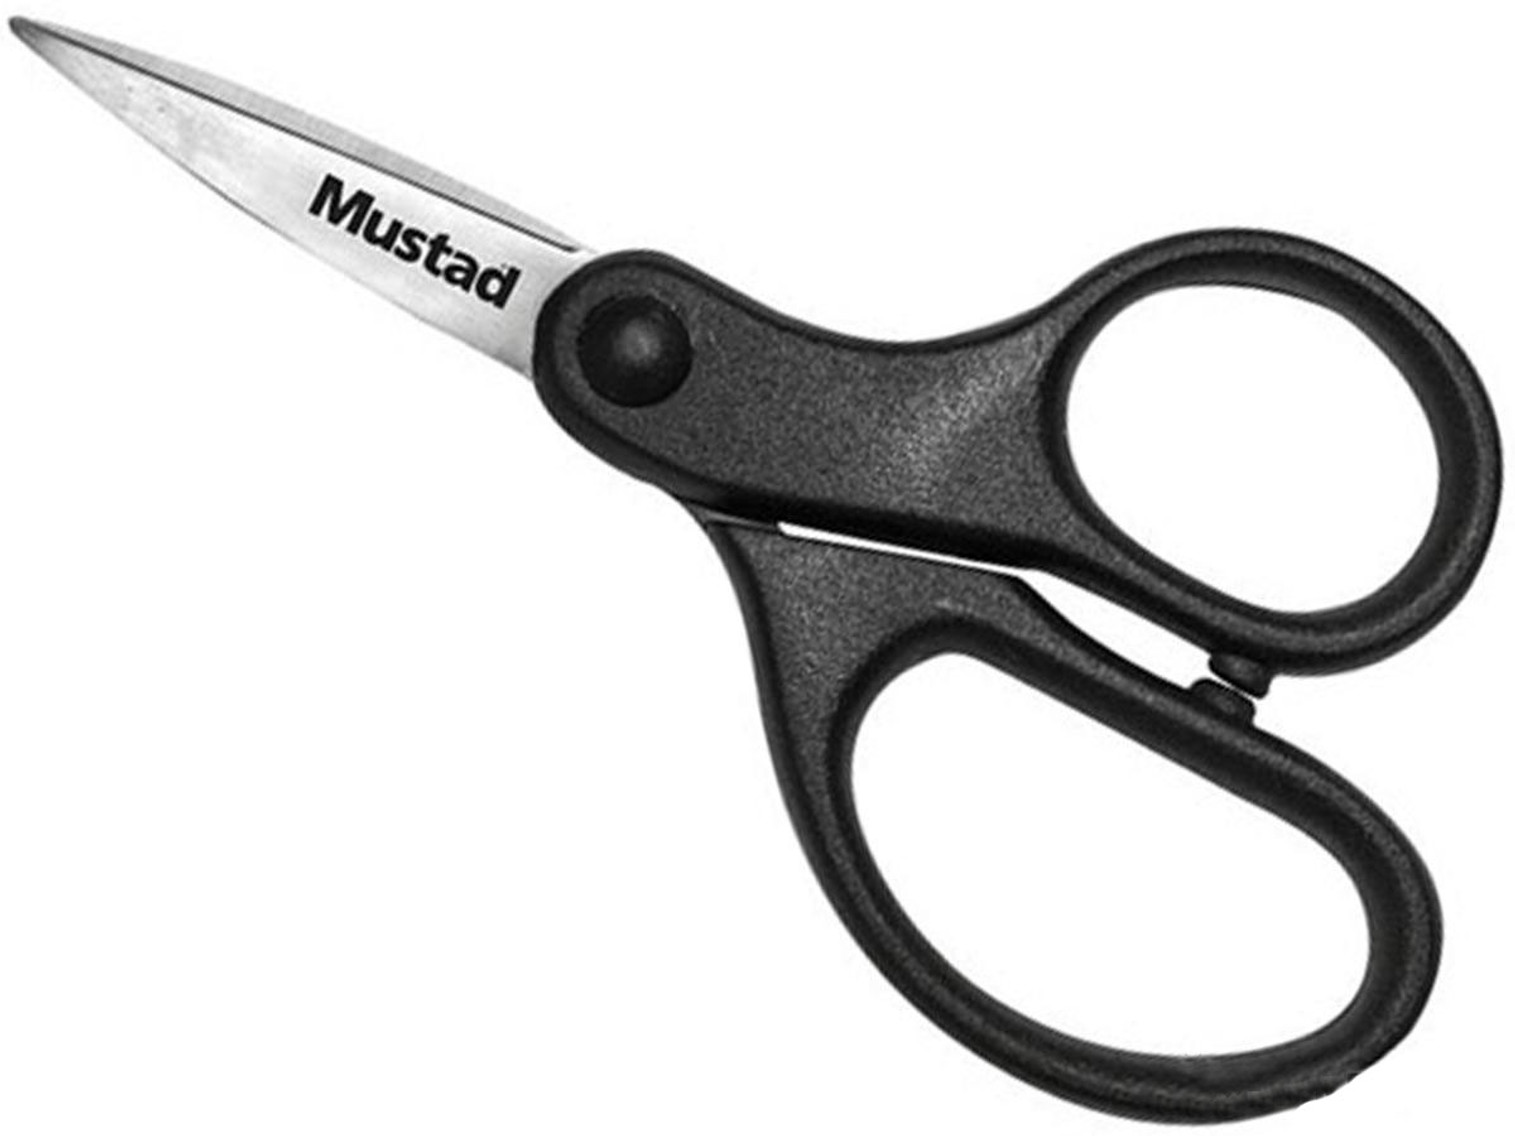 Mustad 4.5" Braid Scissors